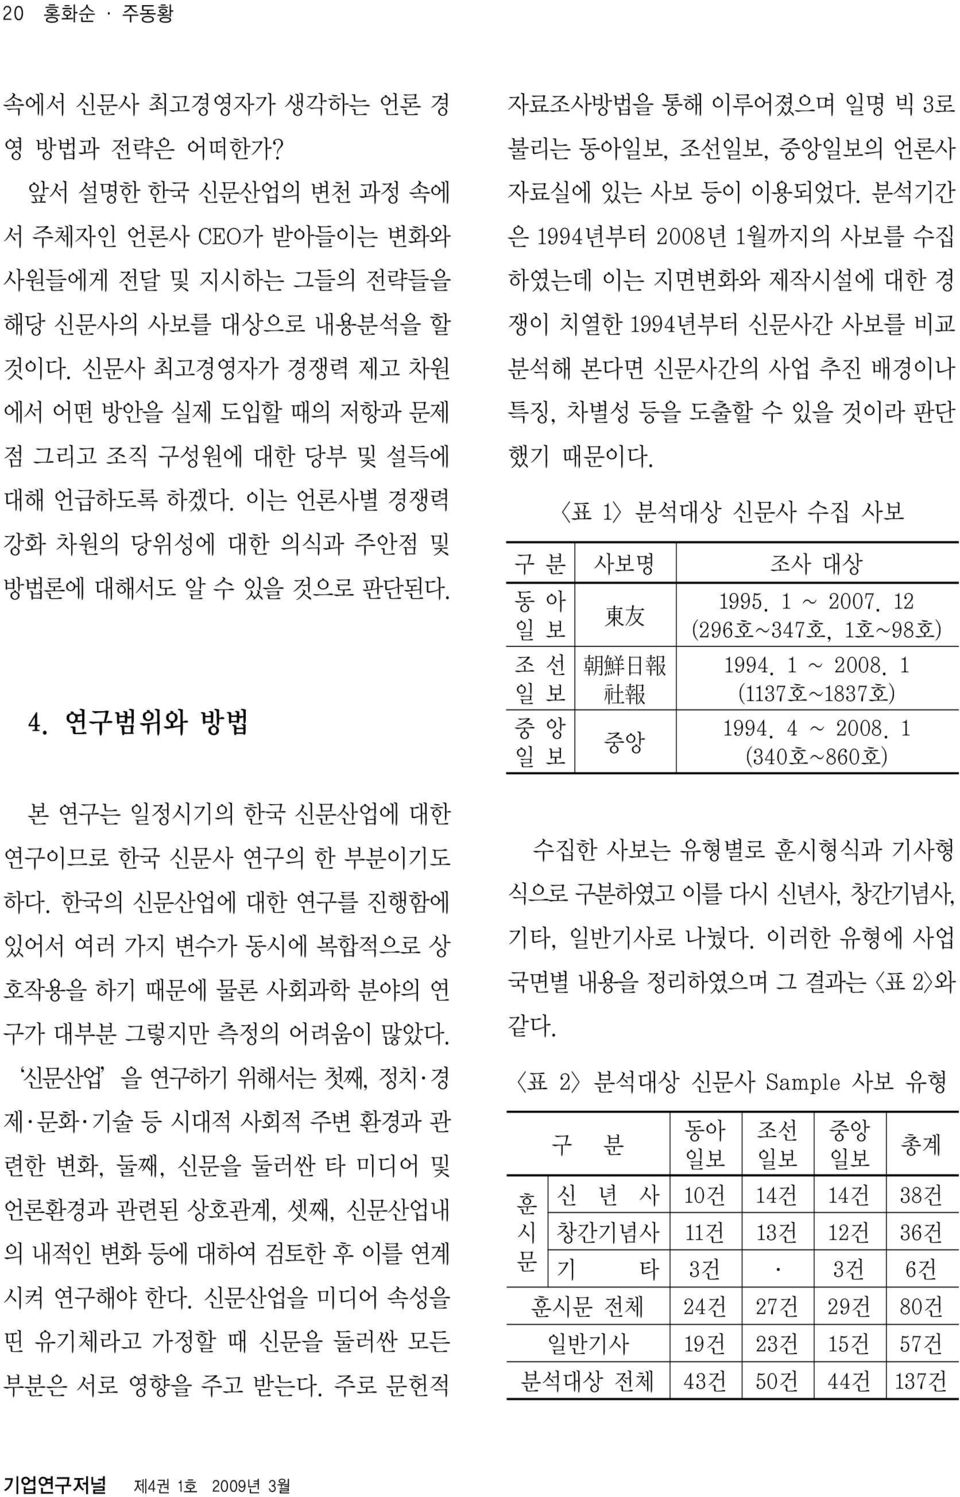 연구범위와 방법 본 연구는 일정시기의 한국 신문산업에 대한 연구이므로 한국 신문사 연구의 한 부분이기도 하다. 한국의 신문산업에 대한 연구를 진행함에 있어서 여러 가지 변수가 동시에 복합적으로 상 호작용을 하기 때문에 물론 사회과학 분야의 연 구가 대부분 그렇지만 측정의 어려움이 많았다.